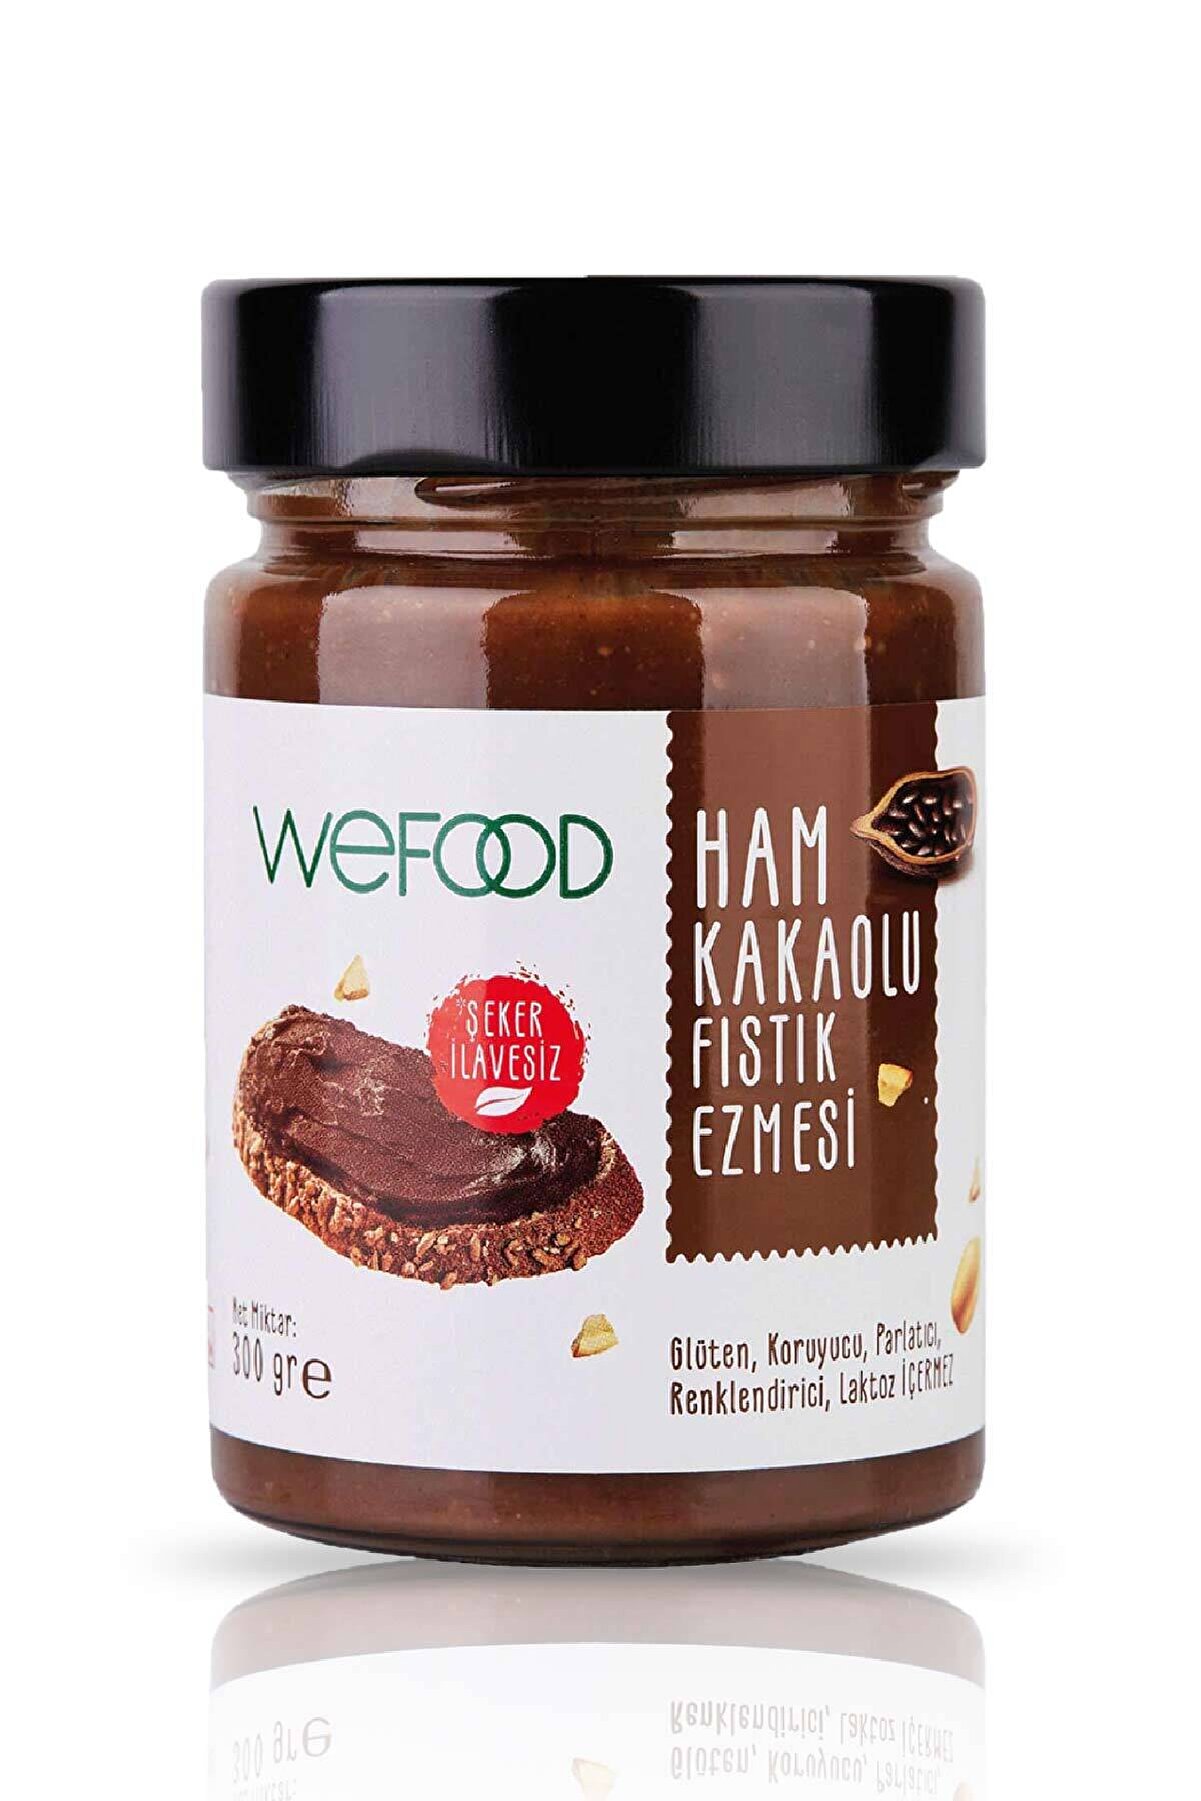 Wefood Ham Kakaolu Fıstık Ezmesi 300 gr